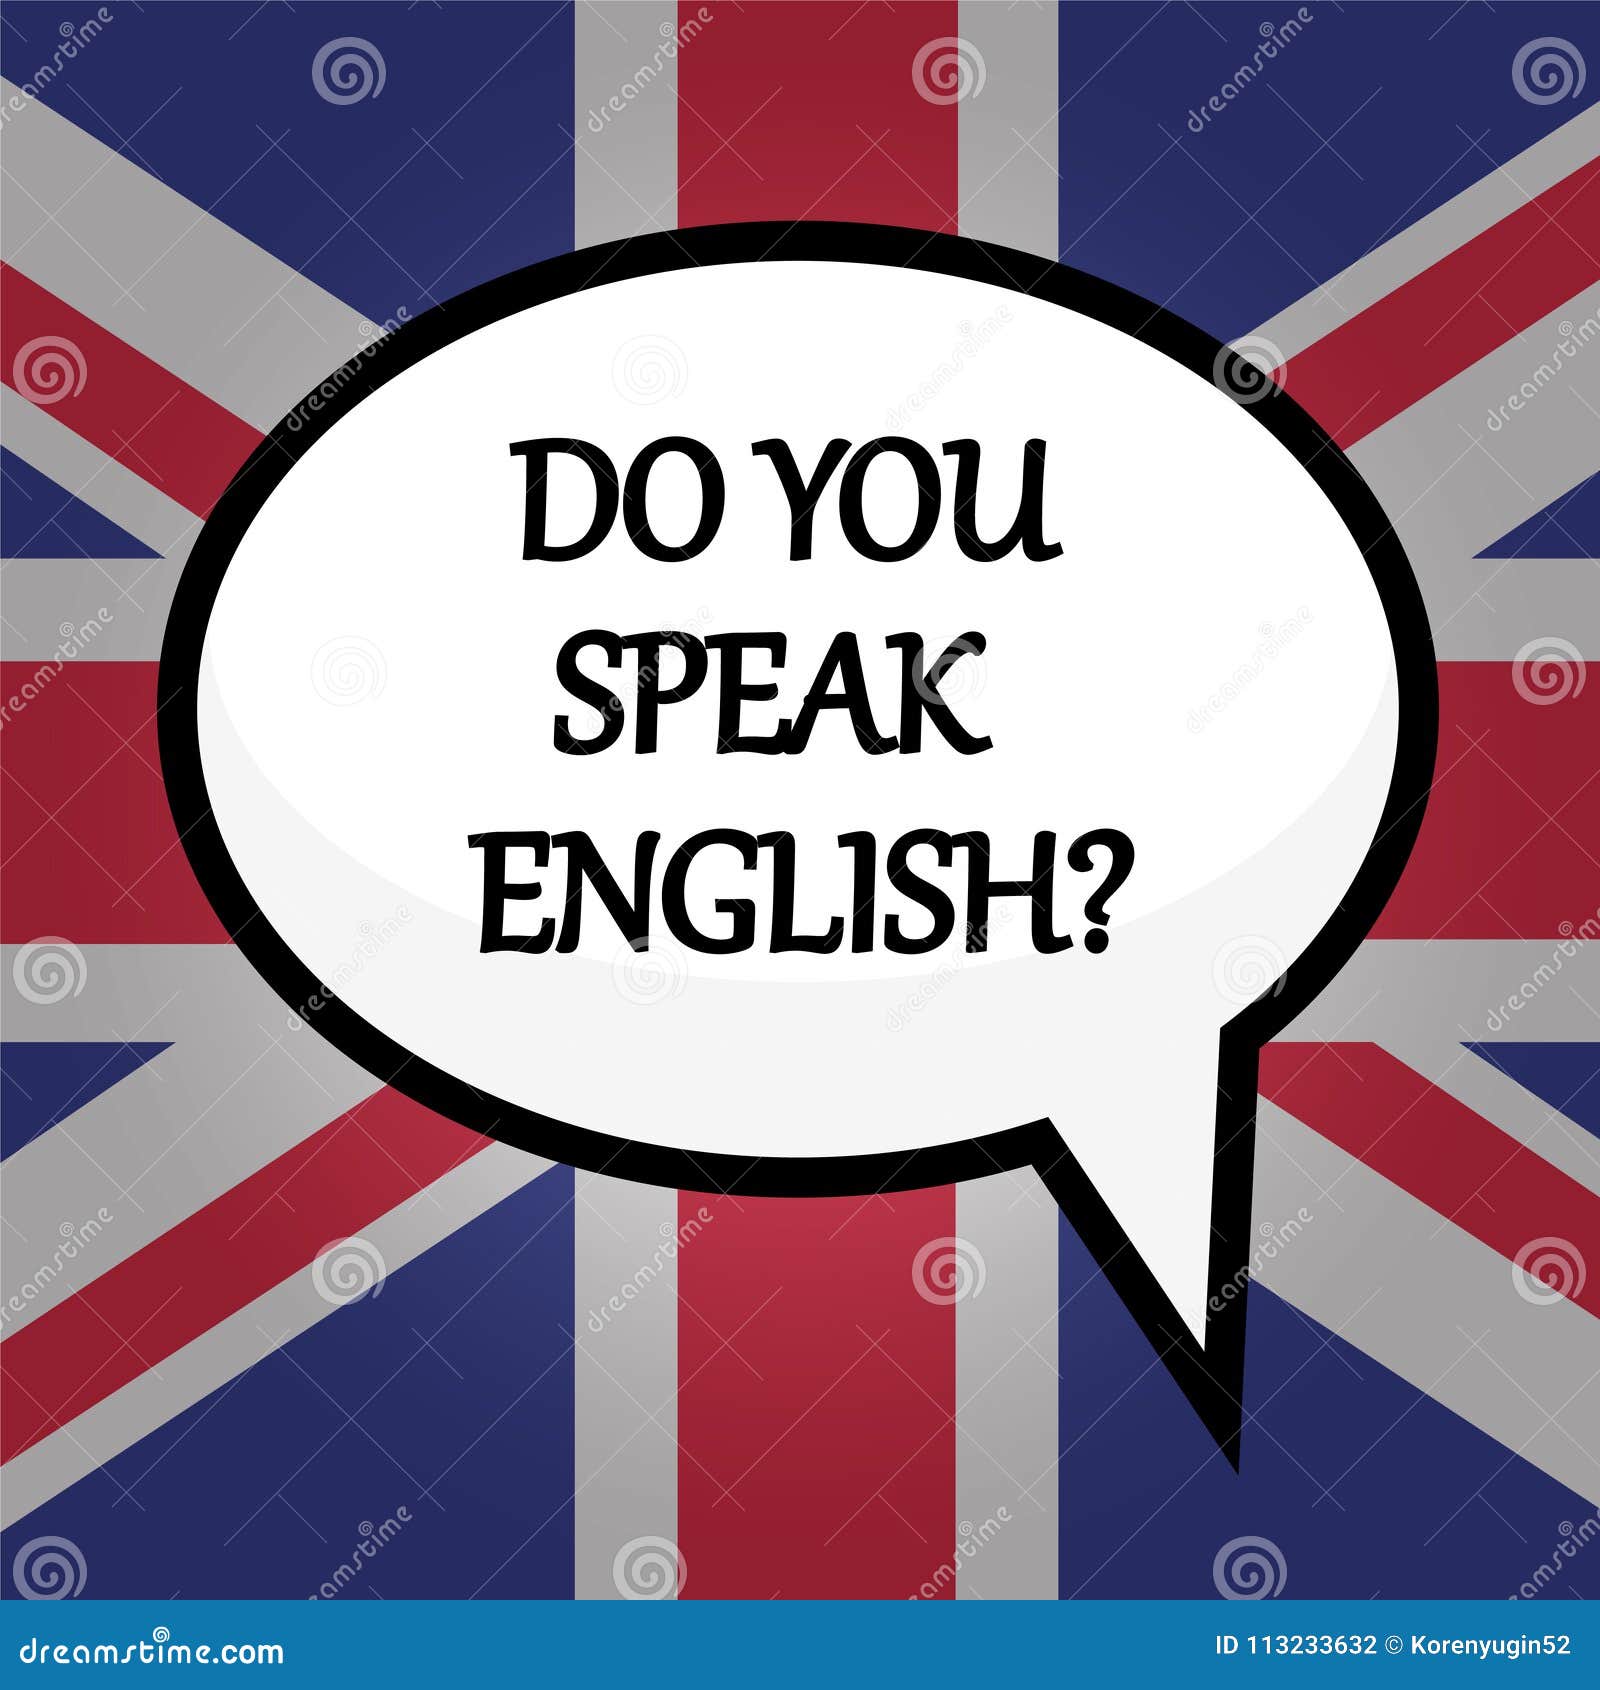 Why do you speak english. Do you speak English. Let's speak English. Speak English надпись. Плакат do you speak English.